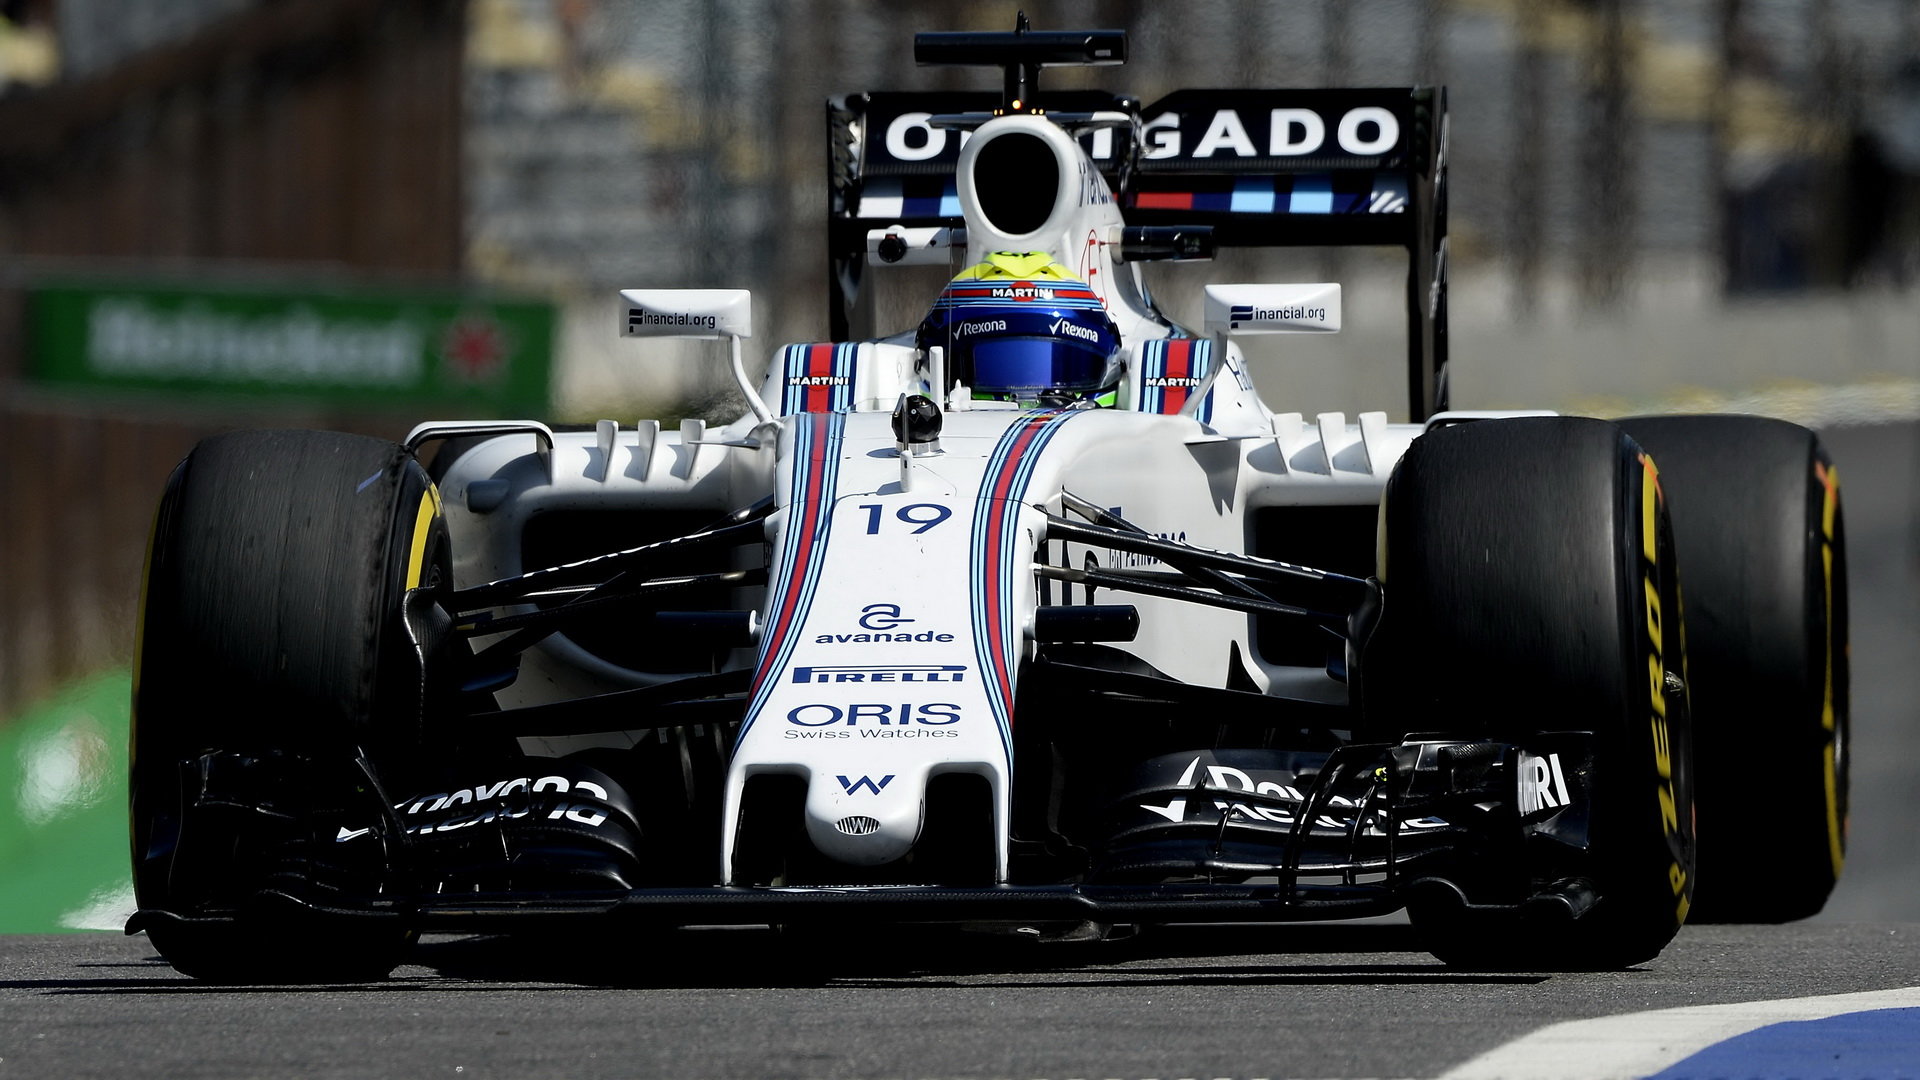 Felipe Massa v prvním tréninku, na zadním křídle nápis Děkuji (Obrigado)